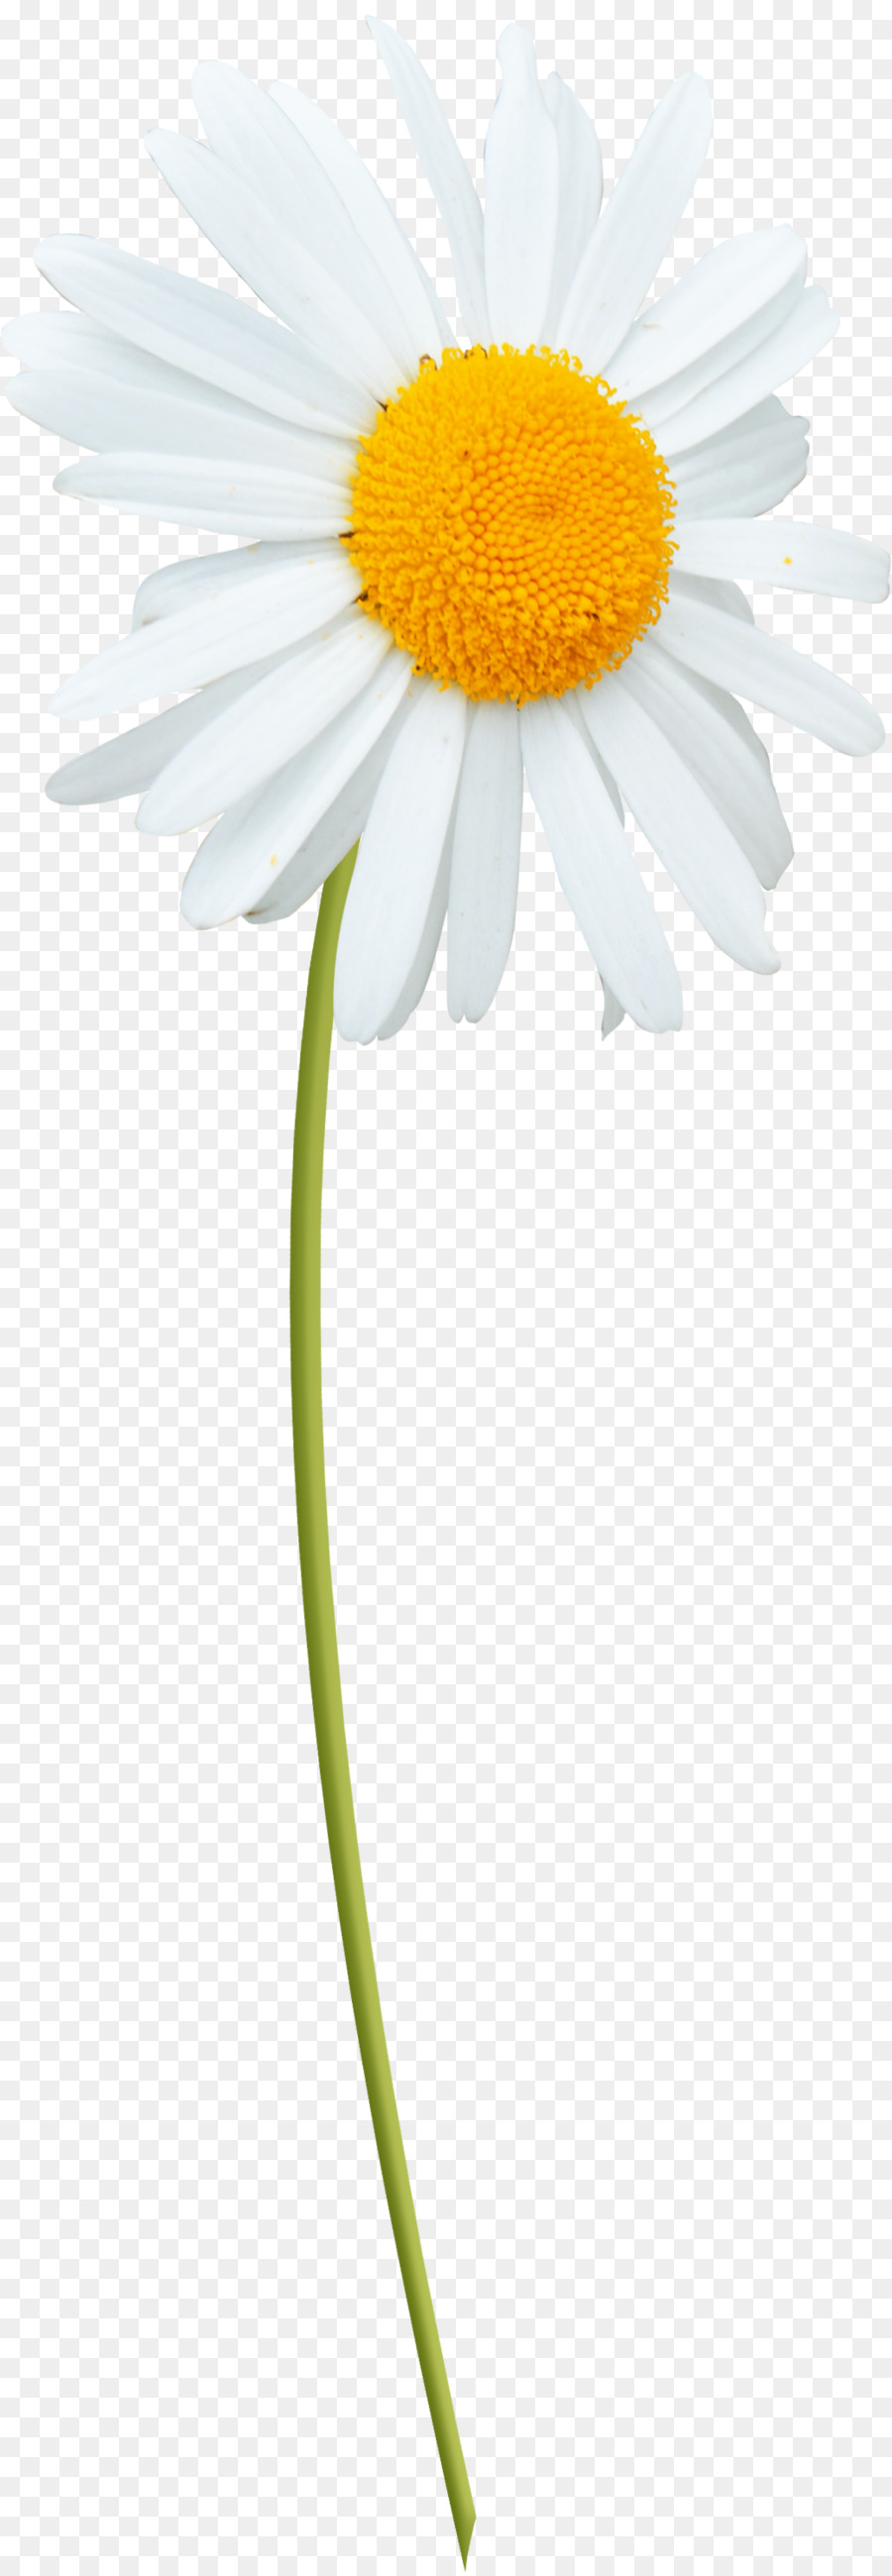 Oxeye daisy Marguerite daisy La mã hoa cúc Transvaal daisy, Daisy gia đình - Daisy